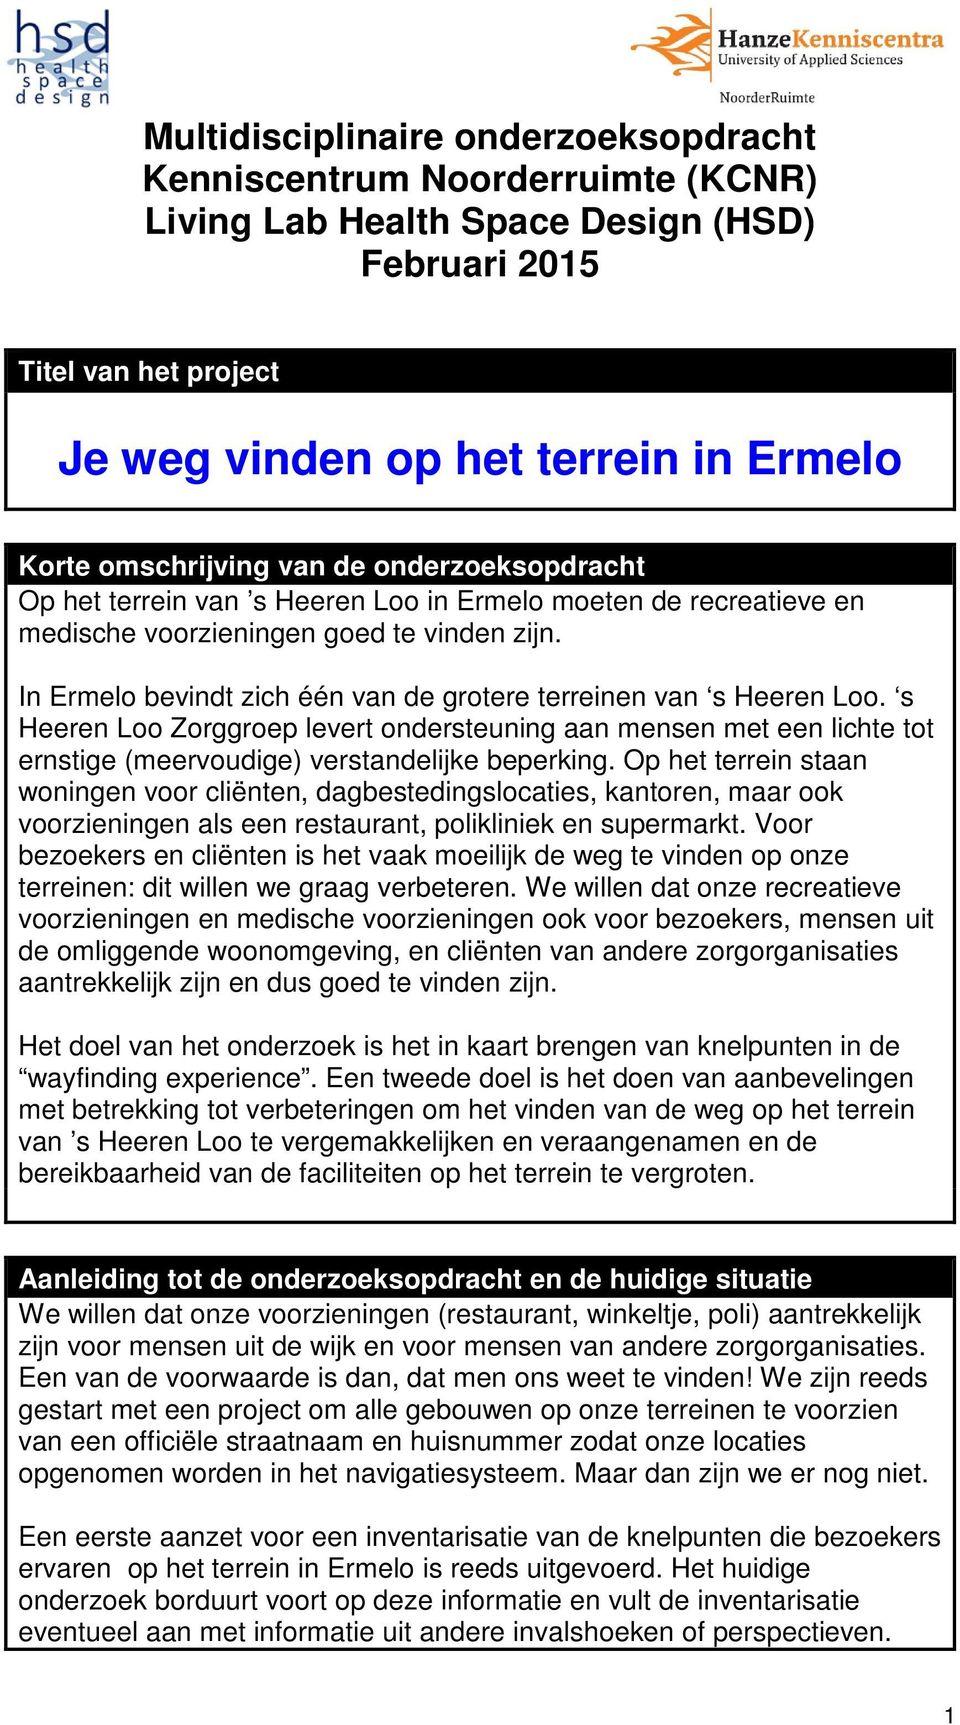 In Ermelo bevindt zich één van de grotere terreinen van s Heeren Loo. s Heeren Loo Zorggroep levert ondersteuning aan mensen met een lichte tot ernstige (meervoudige) verstandelijke beperking.